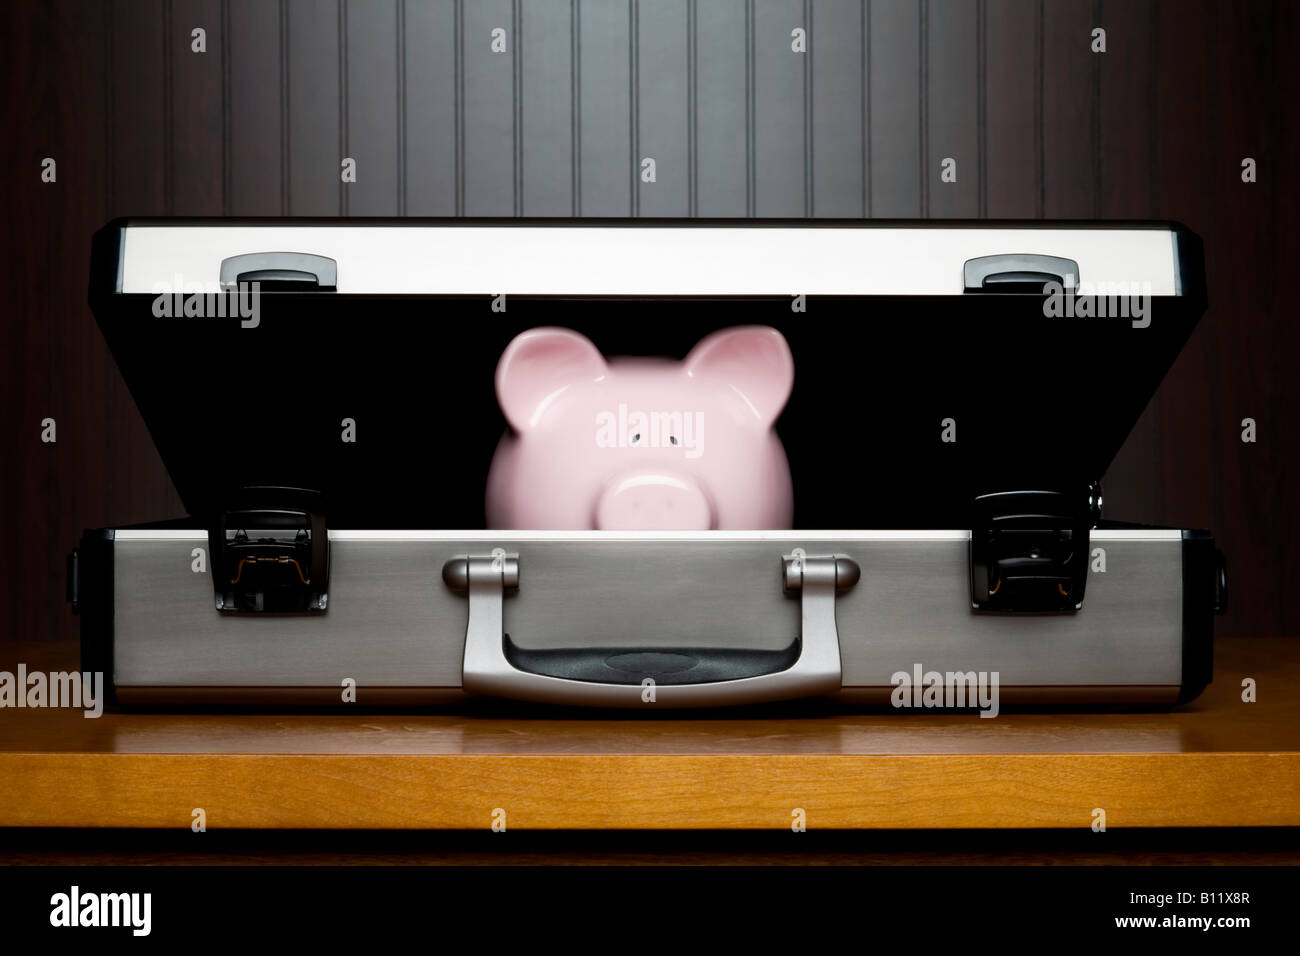 Piggy bank in a briefcase Stock Photo